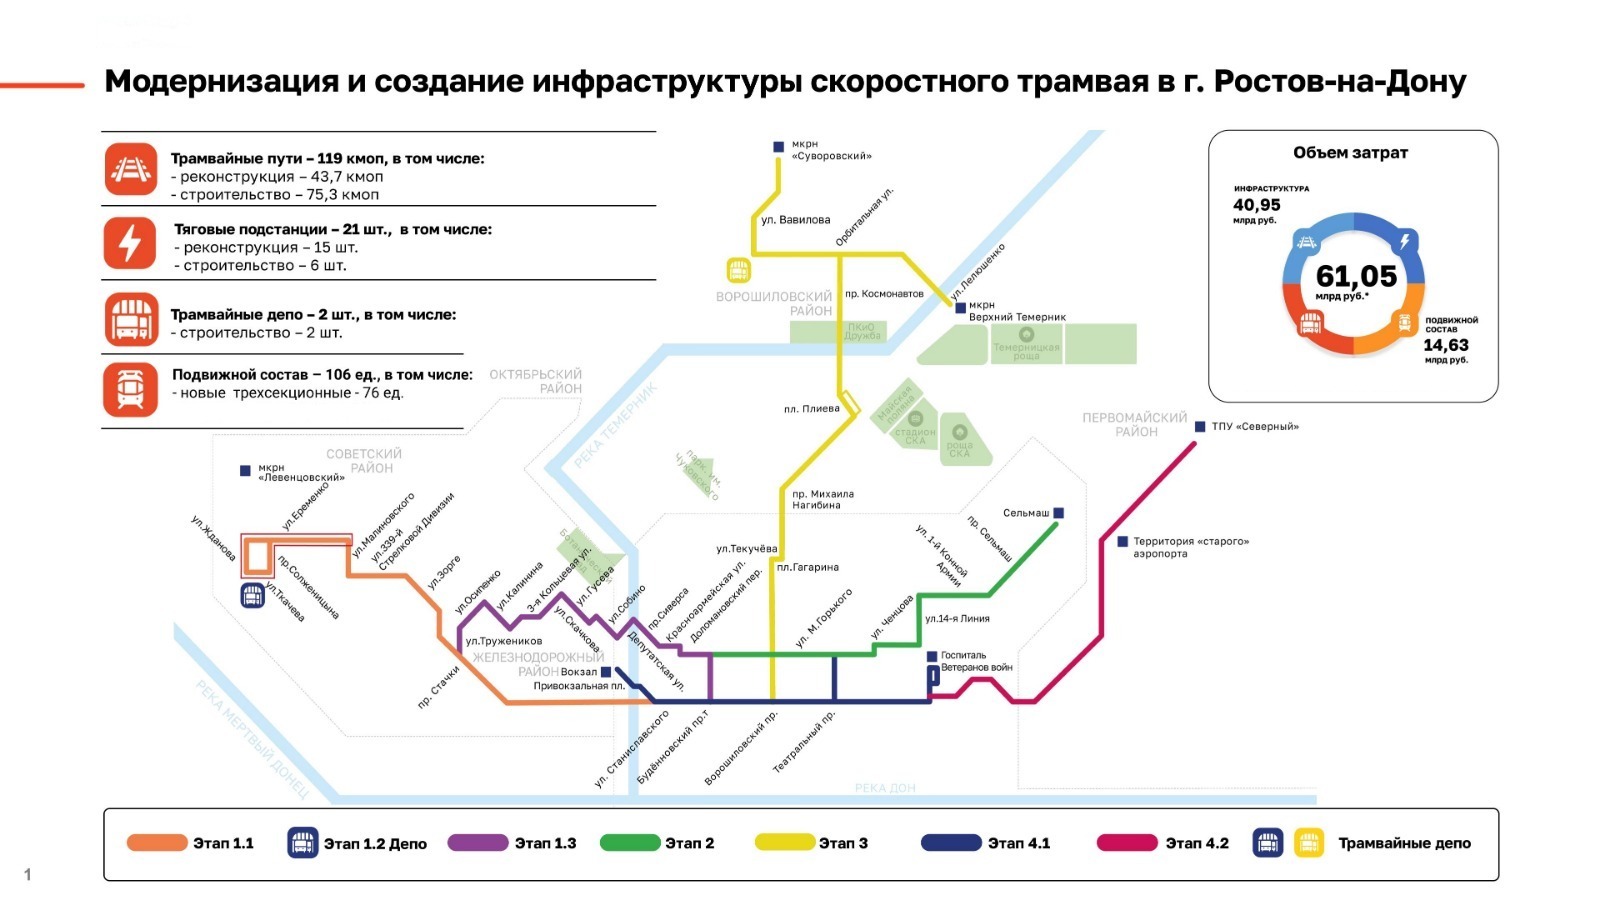 "Синара-ГТР" реализуют проект по строительству и эксплуатации трамвайной сети Ростова-на-Дону